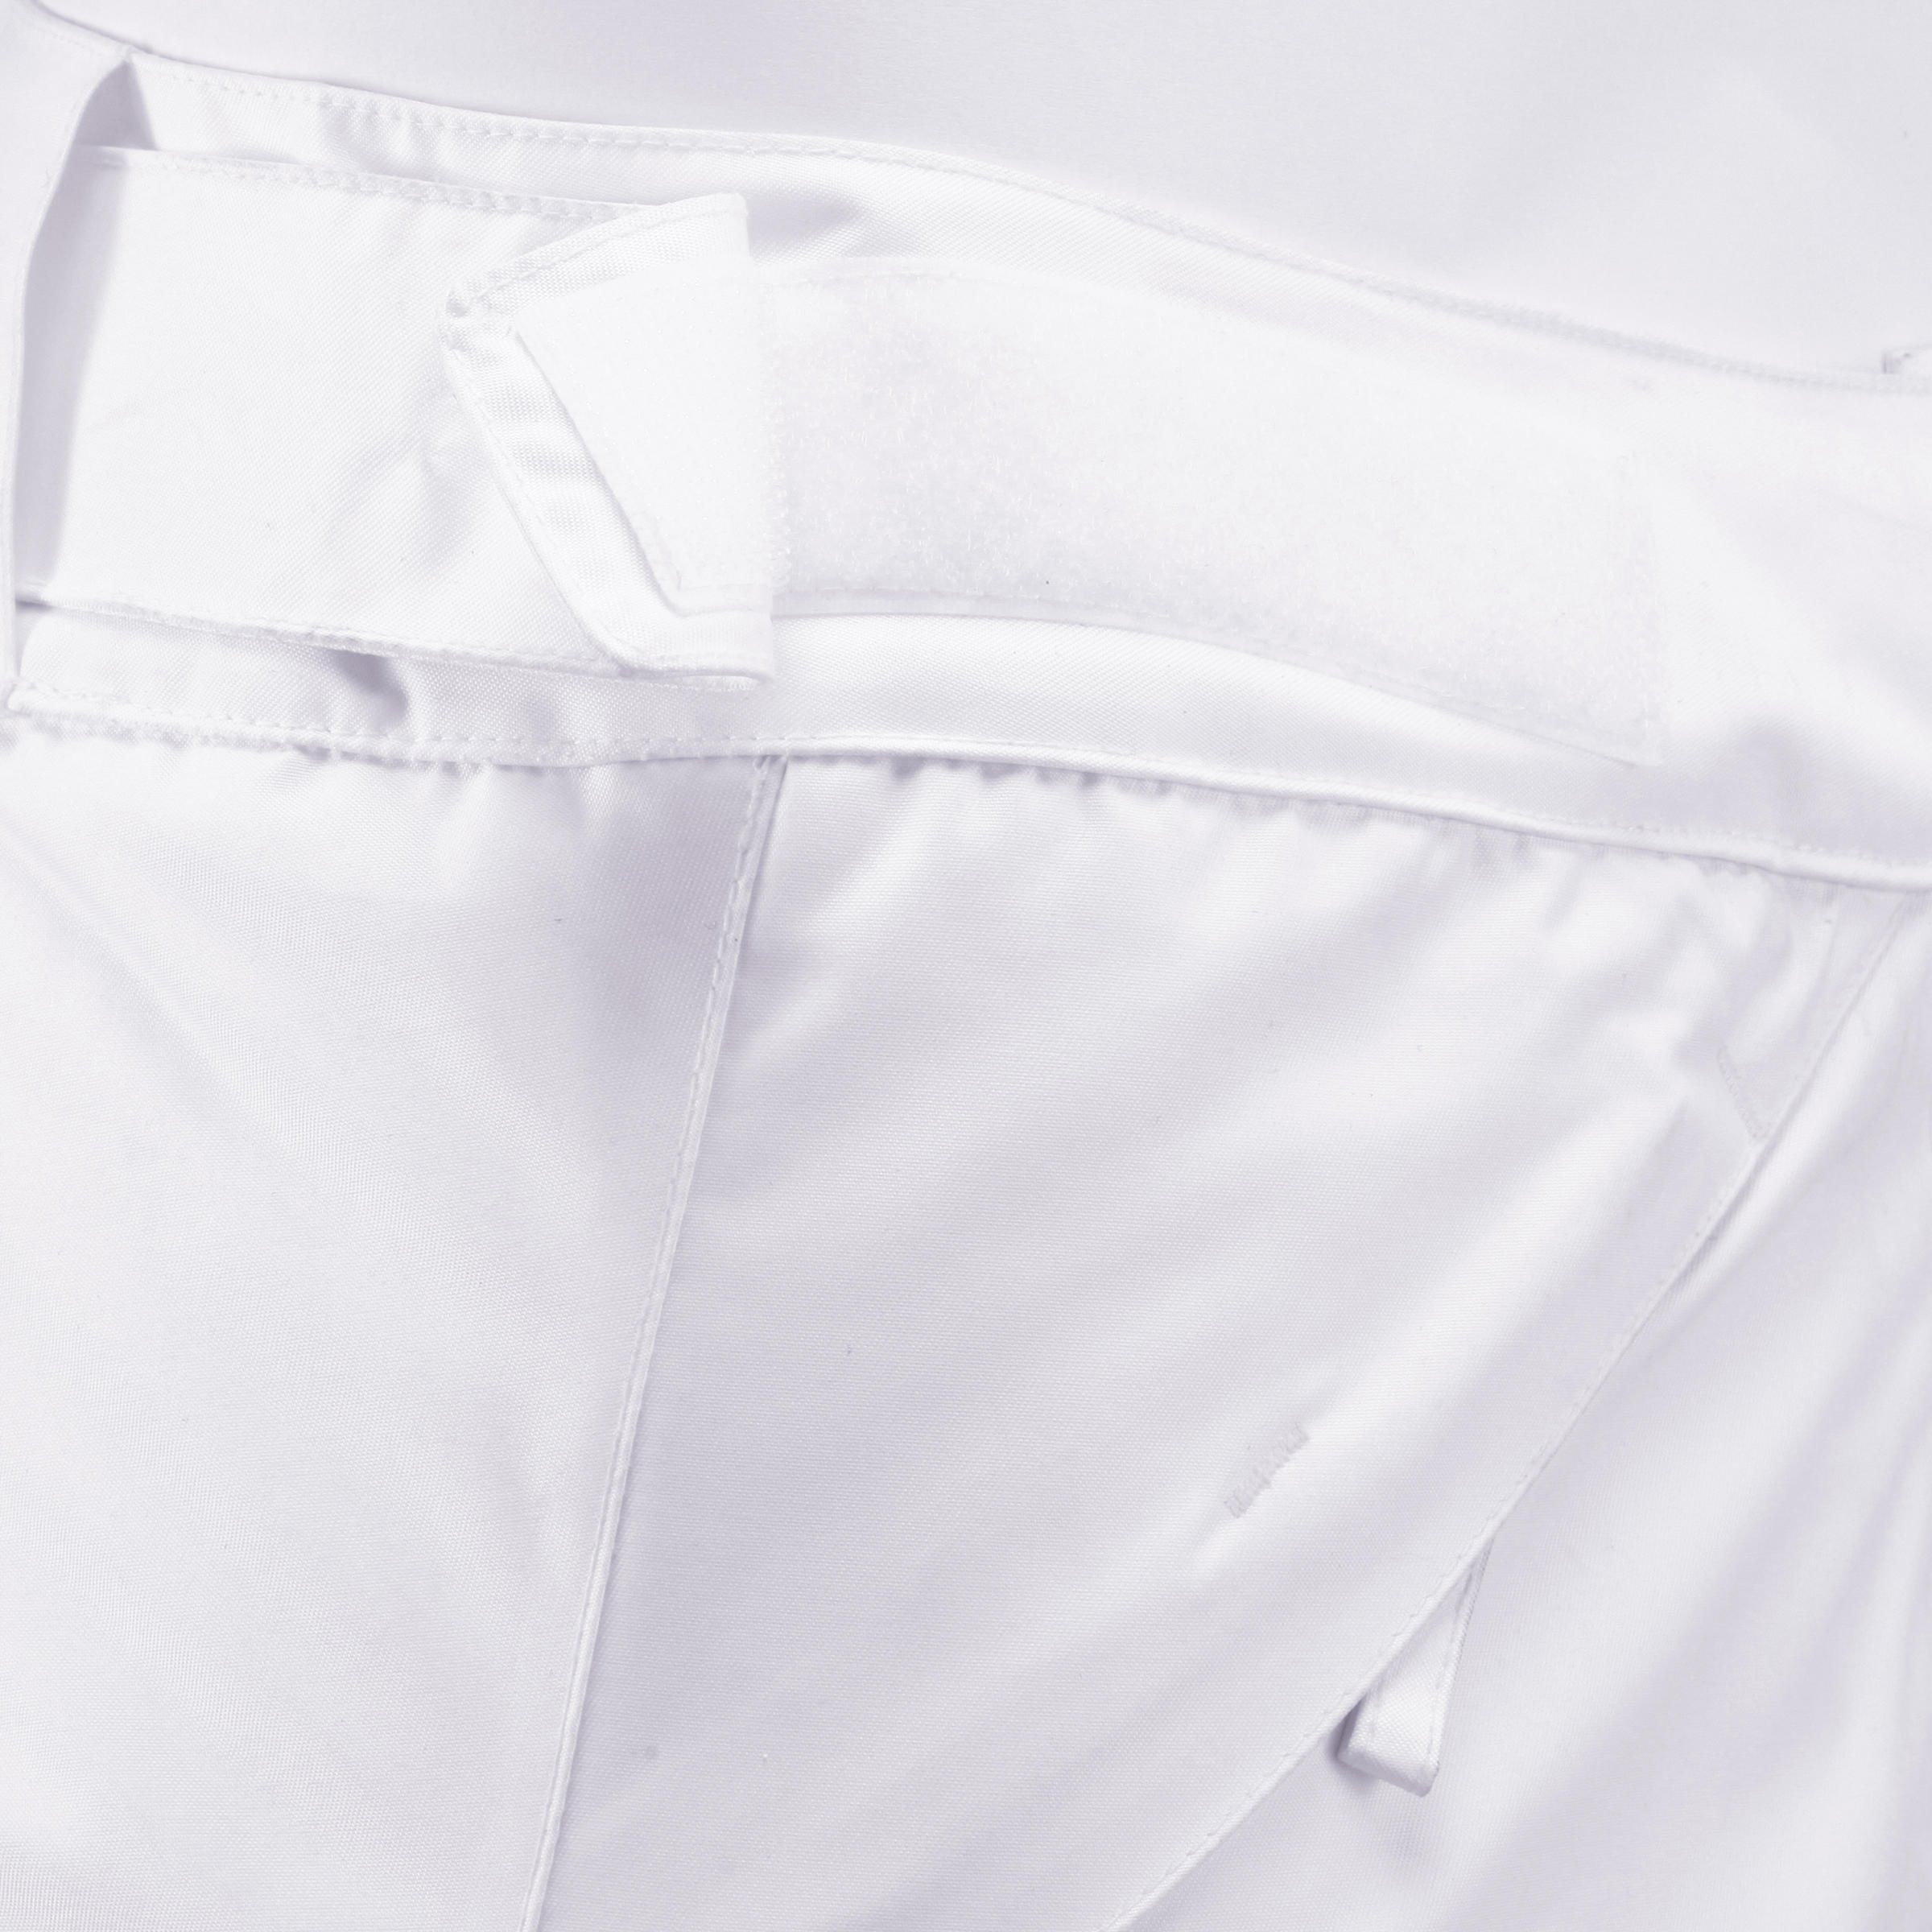 WEDZE FIRST HEAT WOMEN'S SKI PANTS - WHITE 5/12